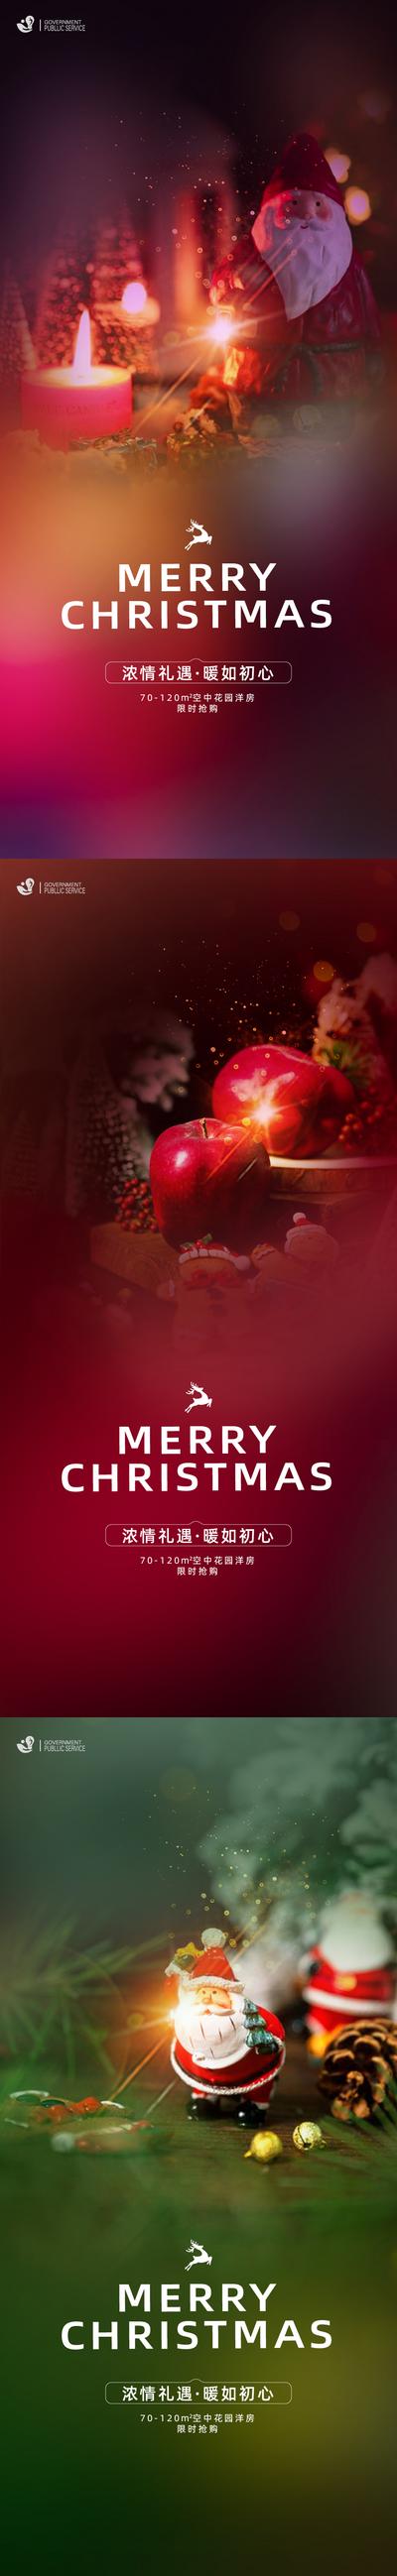 南门网 海报  房地产  系列   圣诞节  公历节日  圣诞老人   蜡烛 苹果